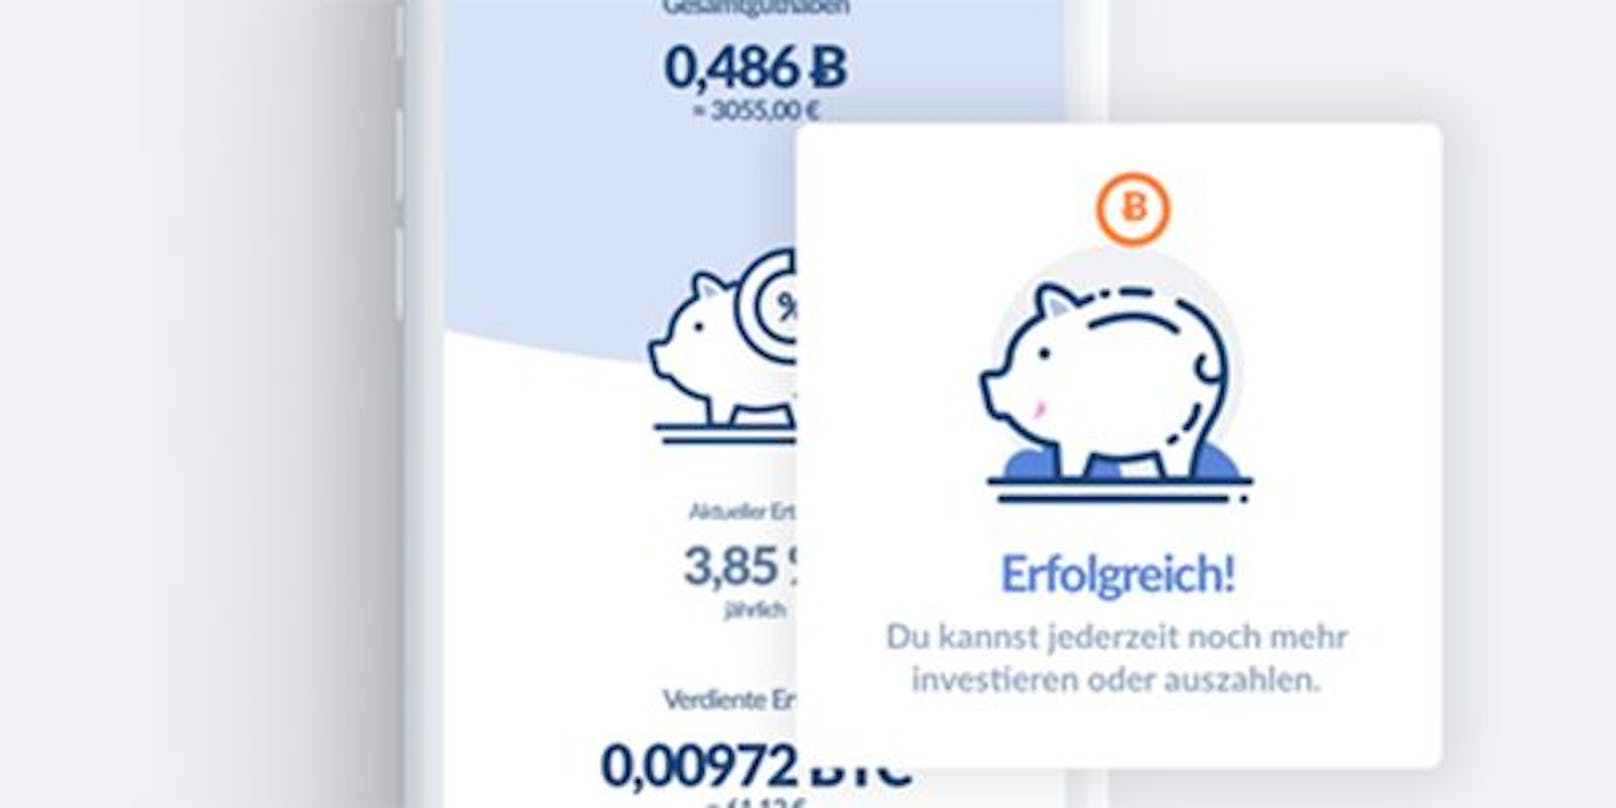 Bitwala bietet den weltweit ersten Banking Service, der ein vollständiges deutsches Bankkonto mit dem Zugang zu Kryptowährungen, digitalen Vermögenswerten und blockchainbasierten Finanzdienstleistungen kombiniert. 